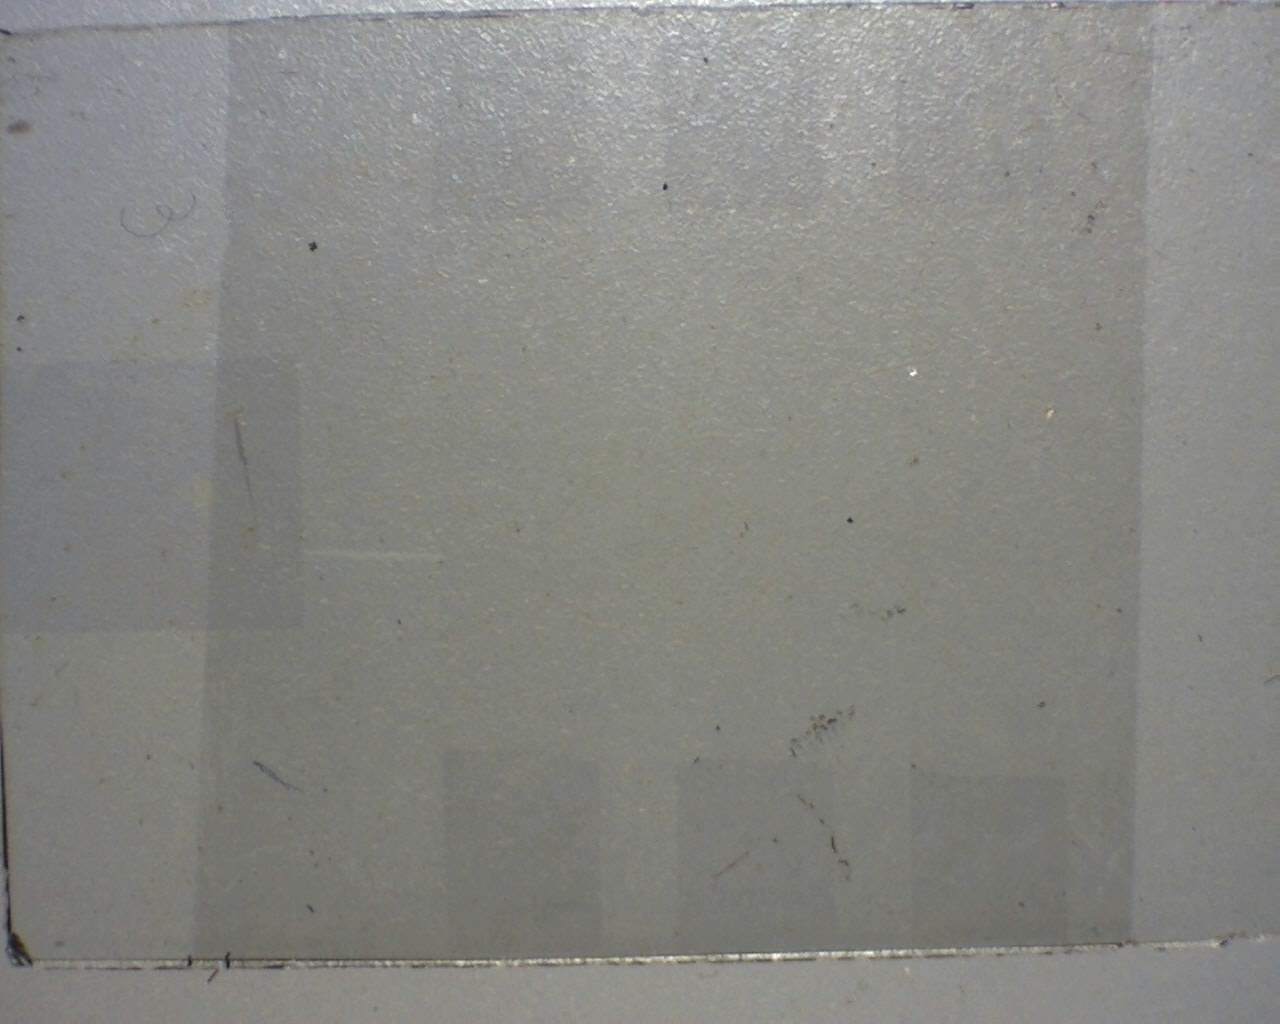 Graphene film grown at low temperature